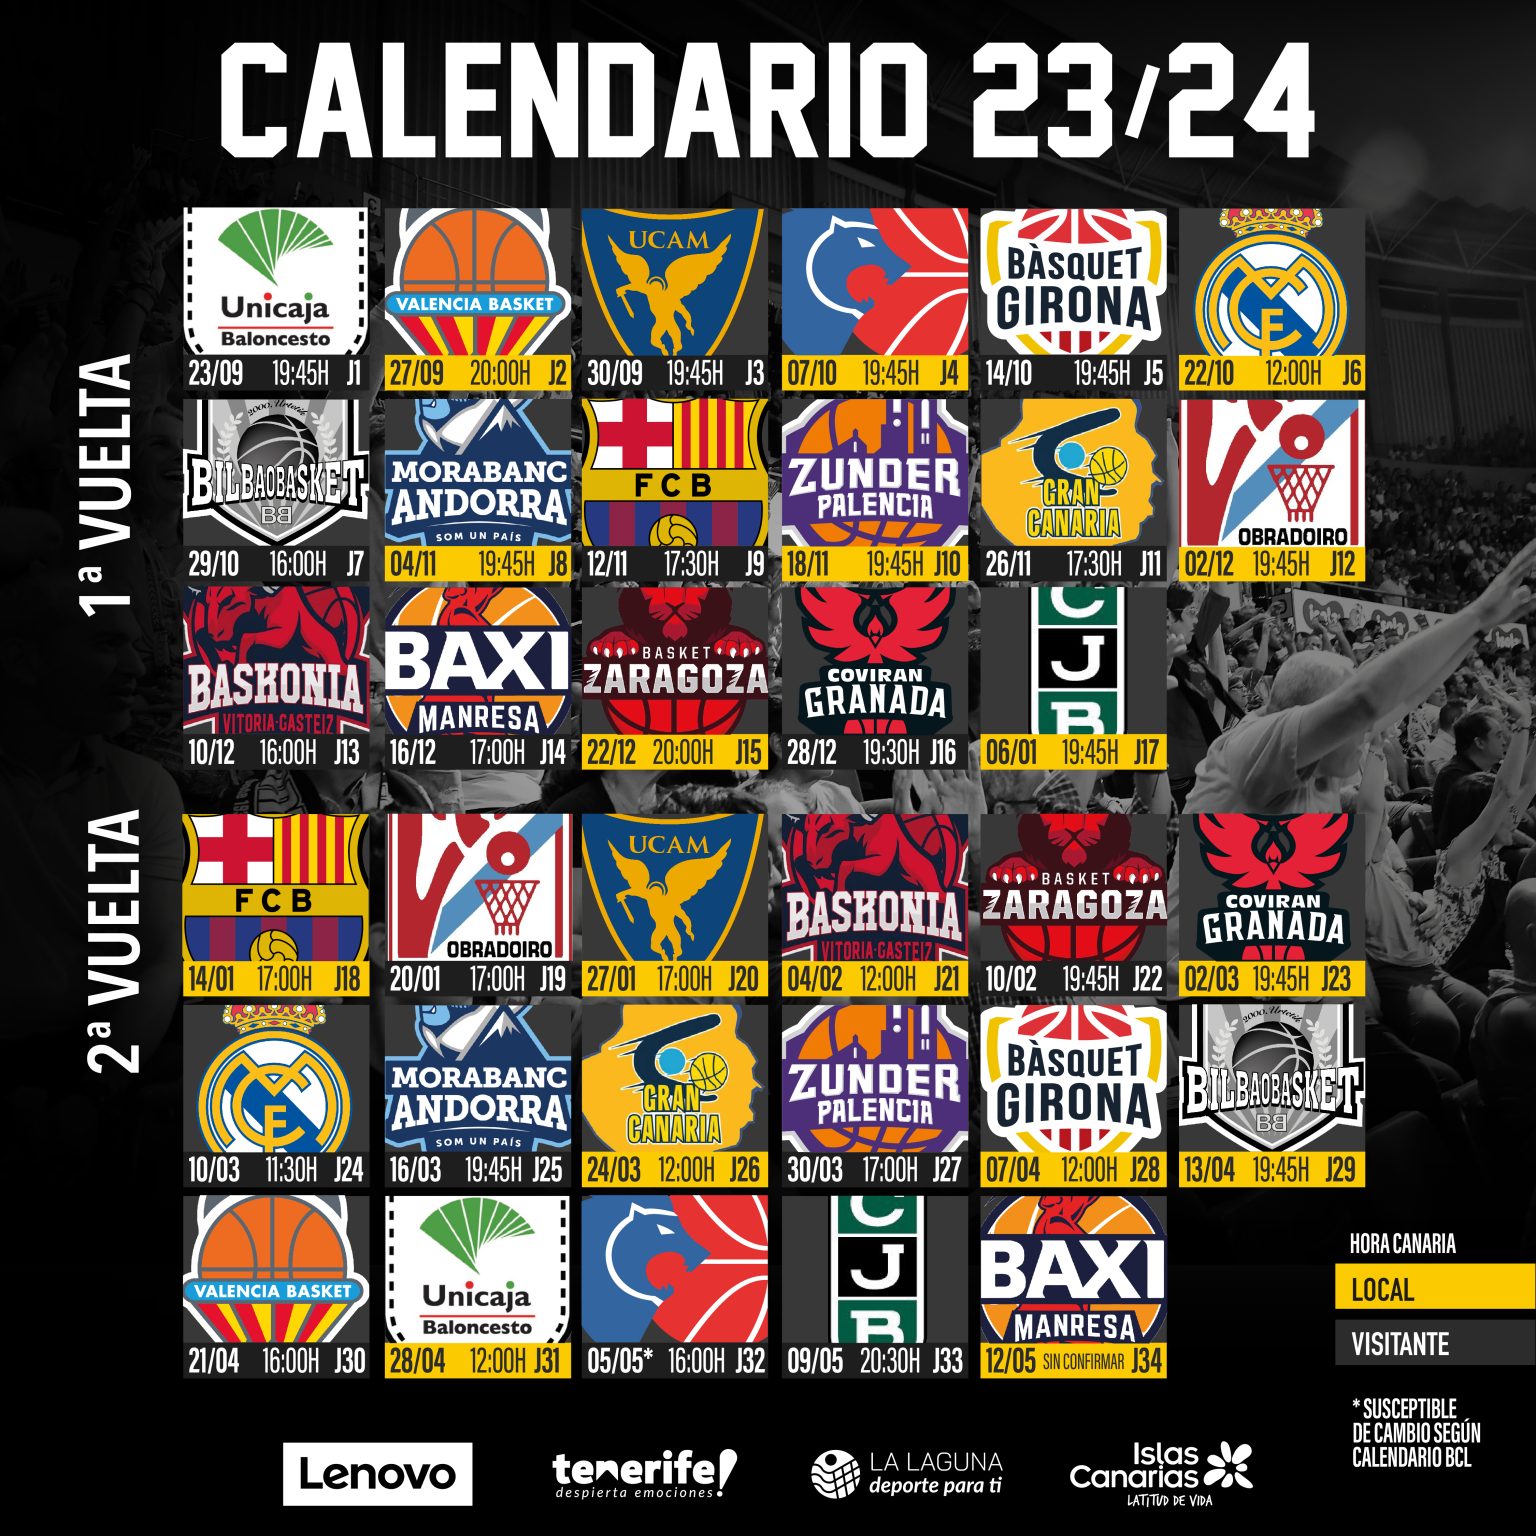 El Lenovo Tenerife ya conoce el calendario de la Liga Endesa 23/24